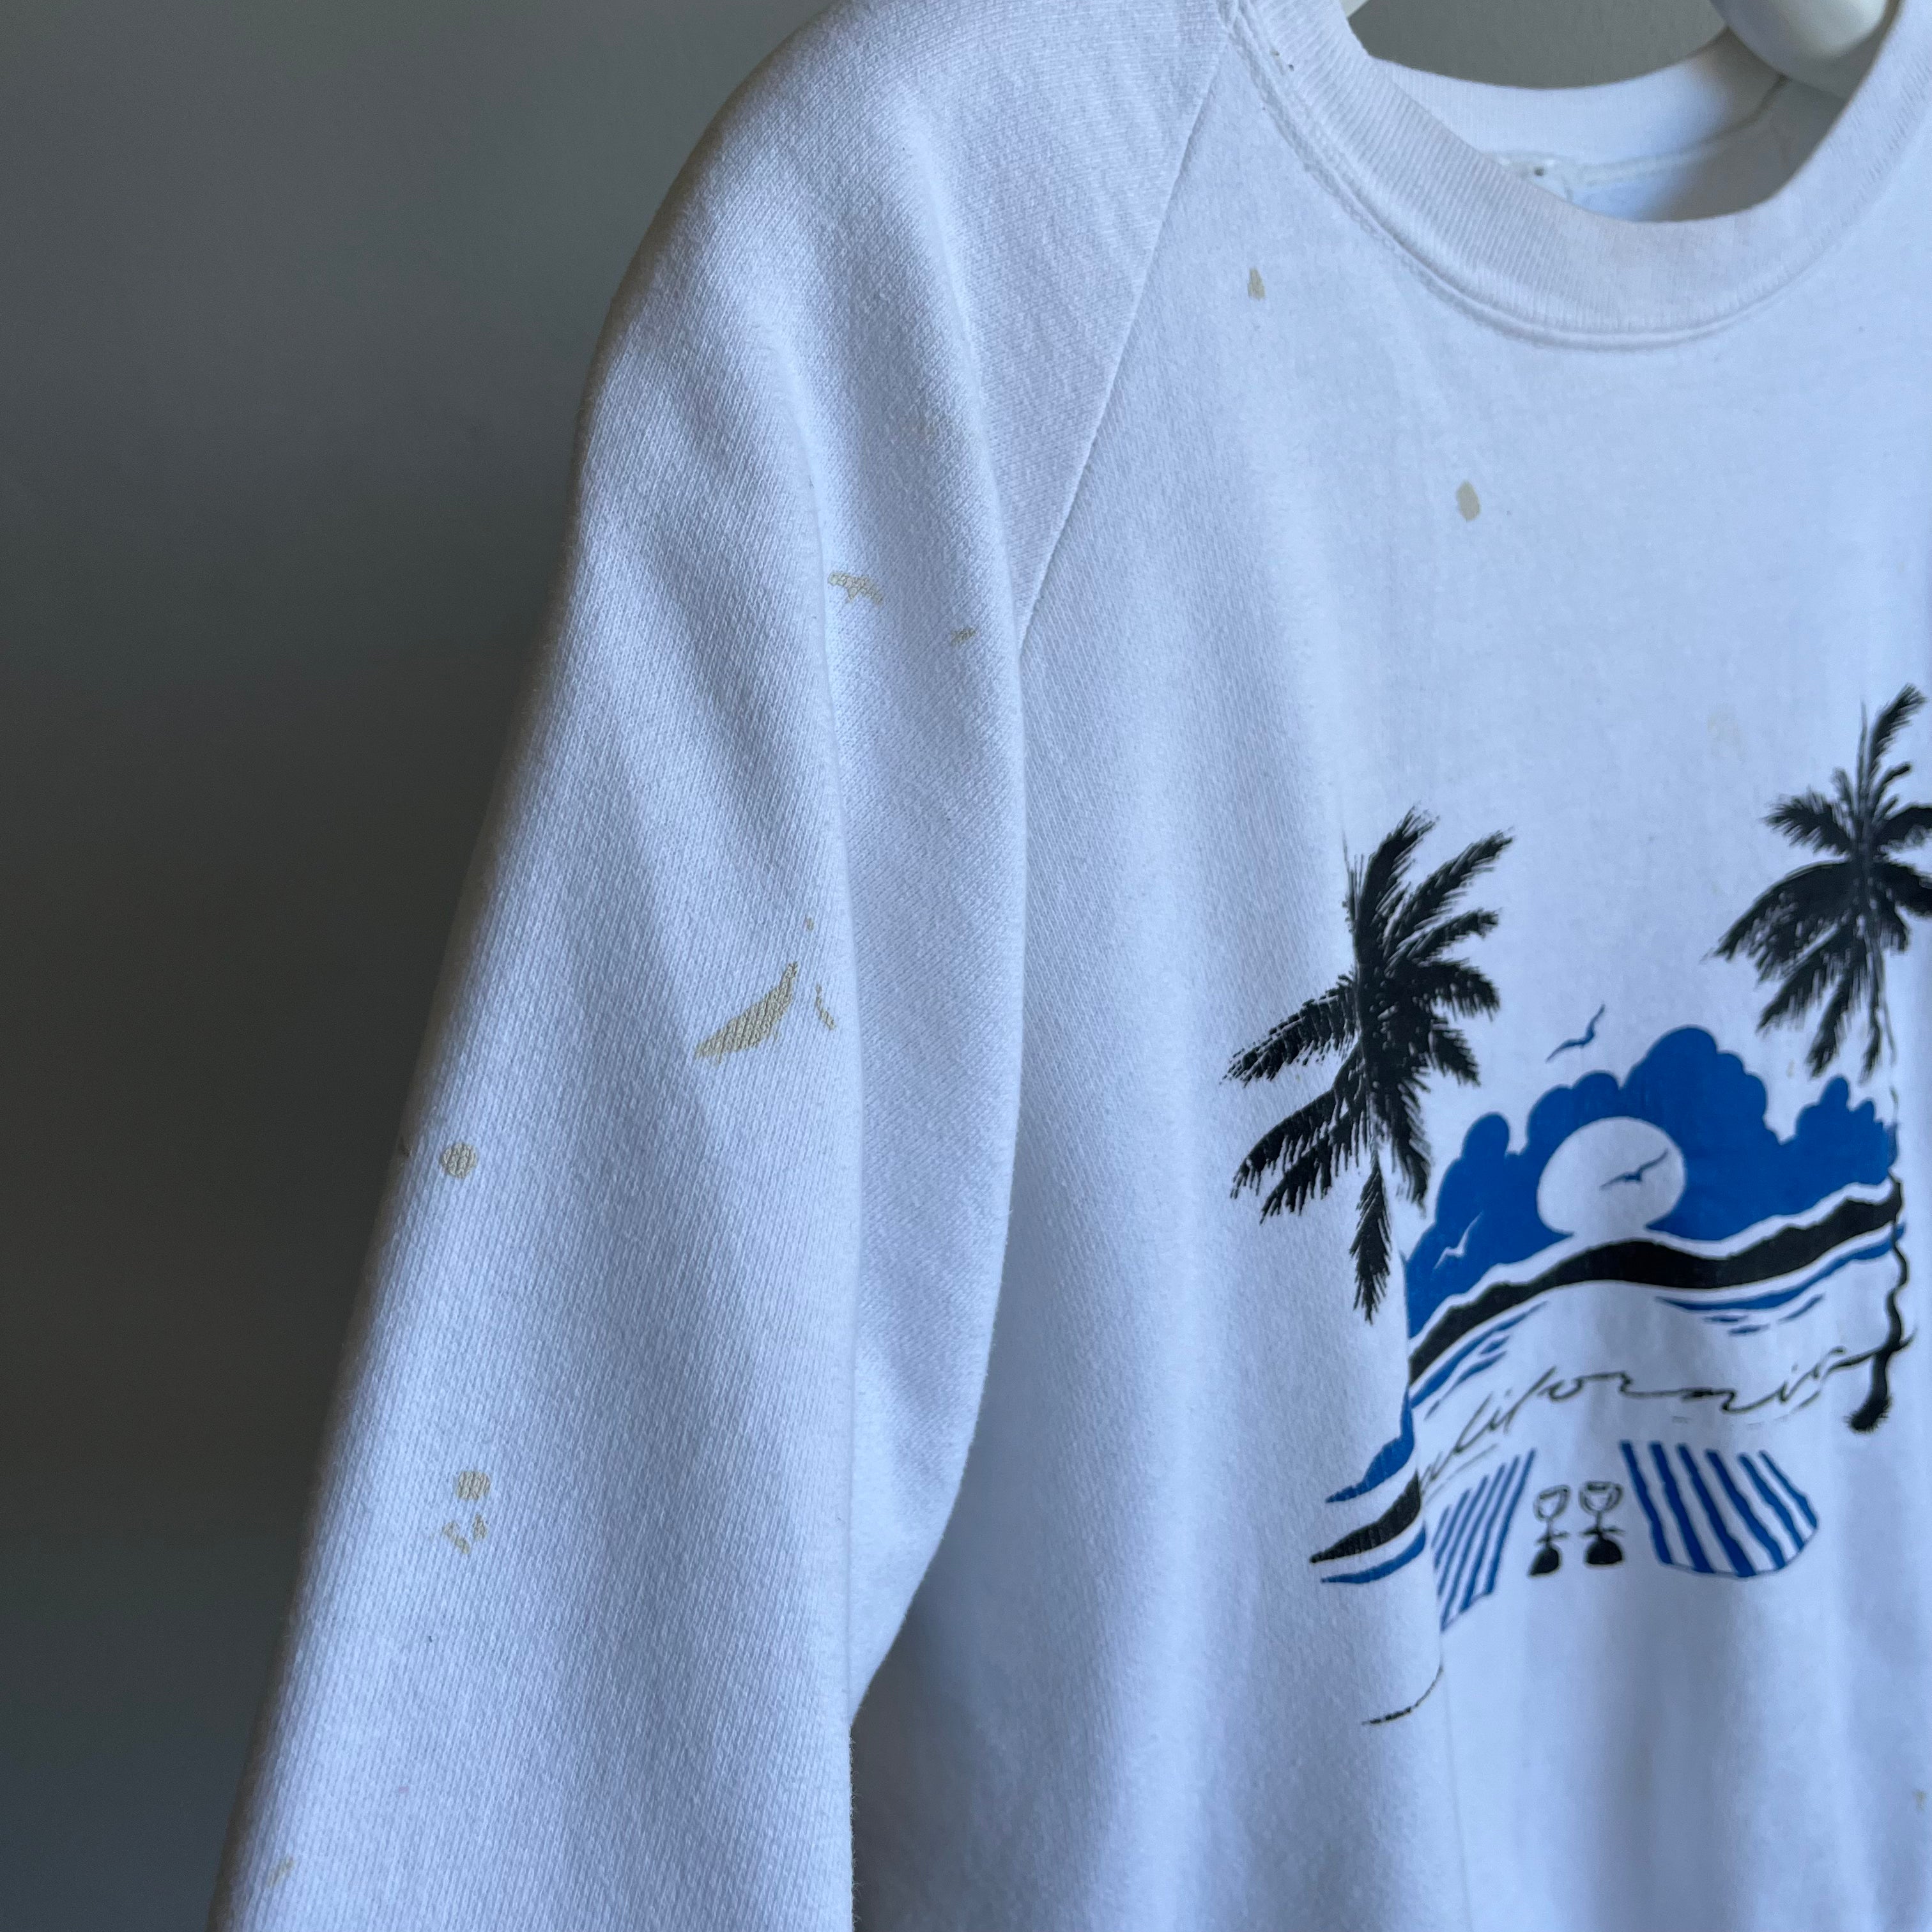 1970s California Tourist Sweatshirt